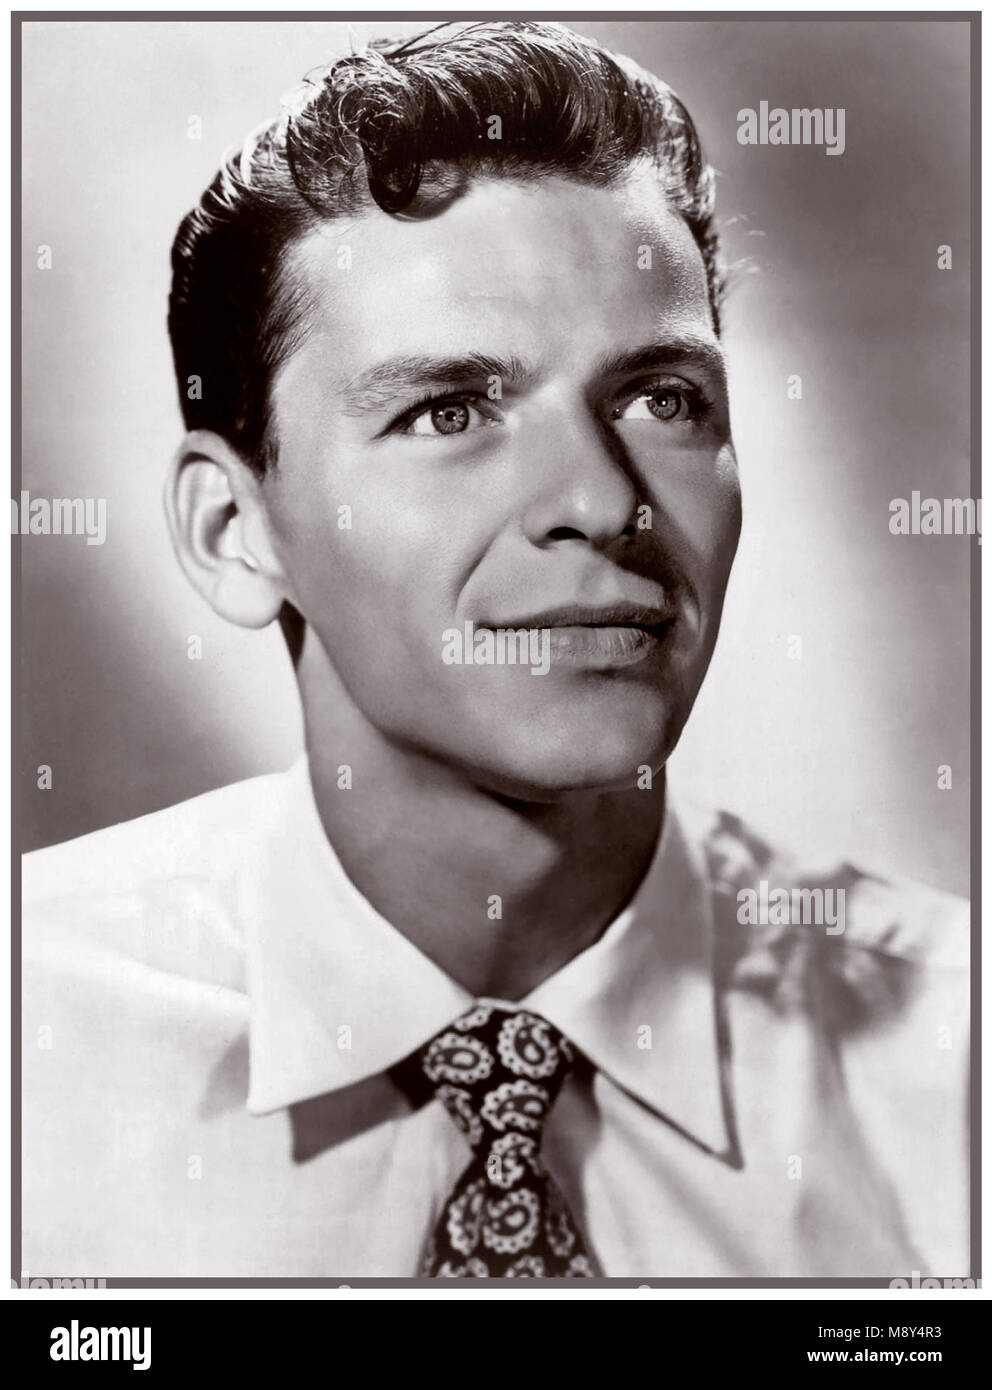 FRANK SINATRA 1930 B&W studio formale ritratto di American crooner cantante e attore Frank Sinatra nel suo ventenne Foto Stock